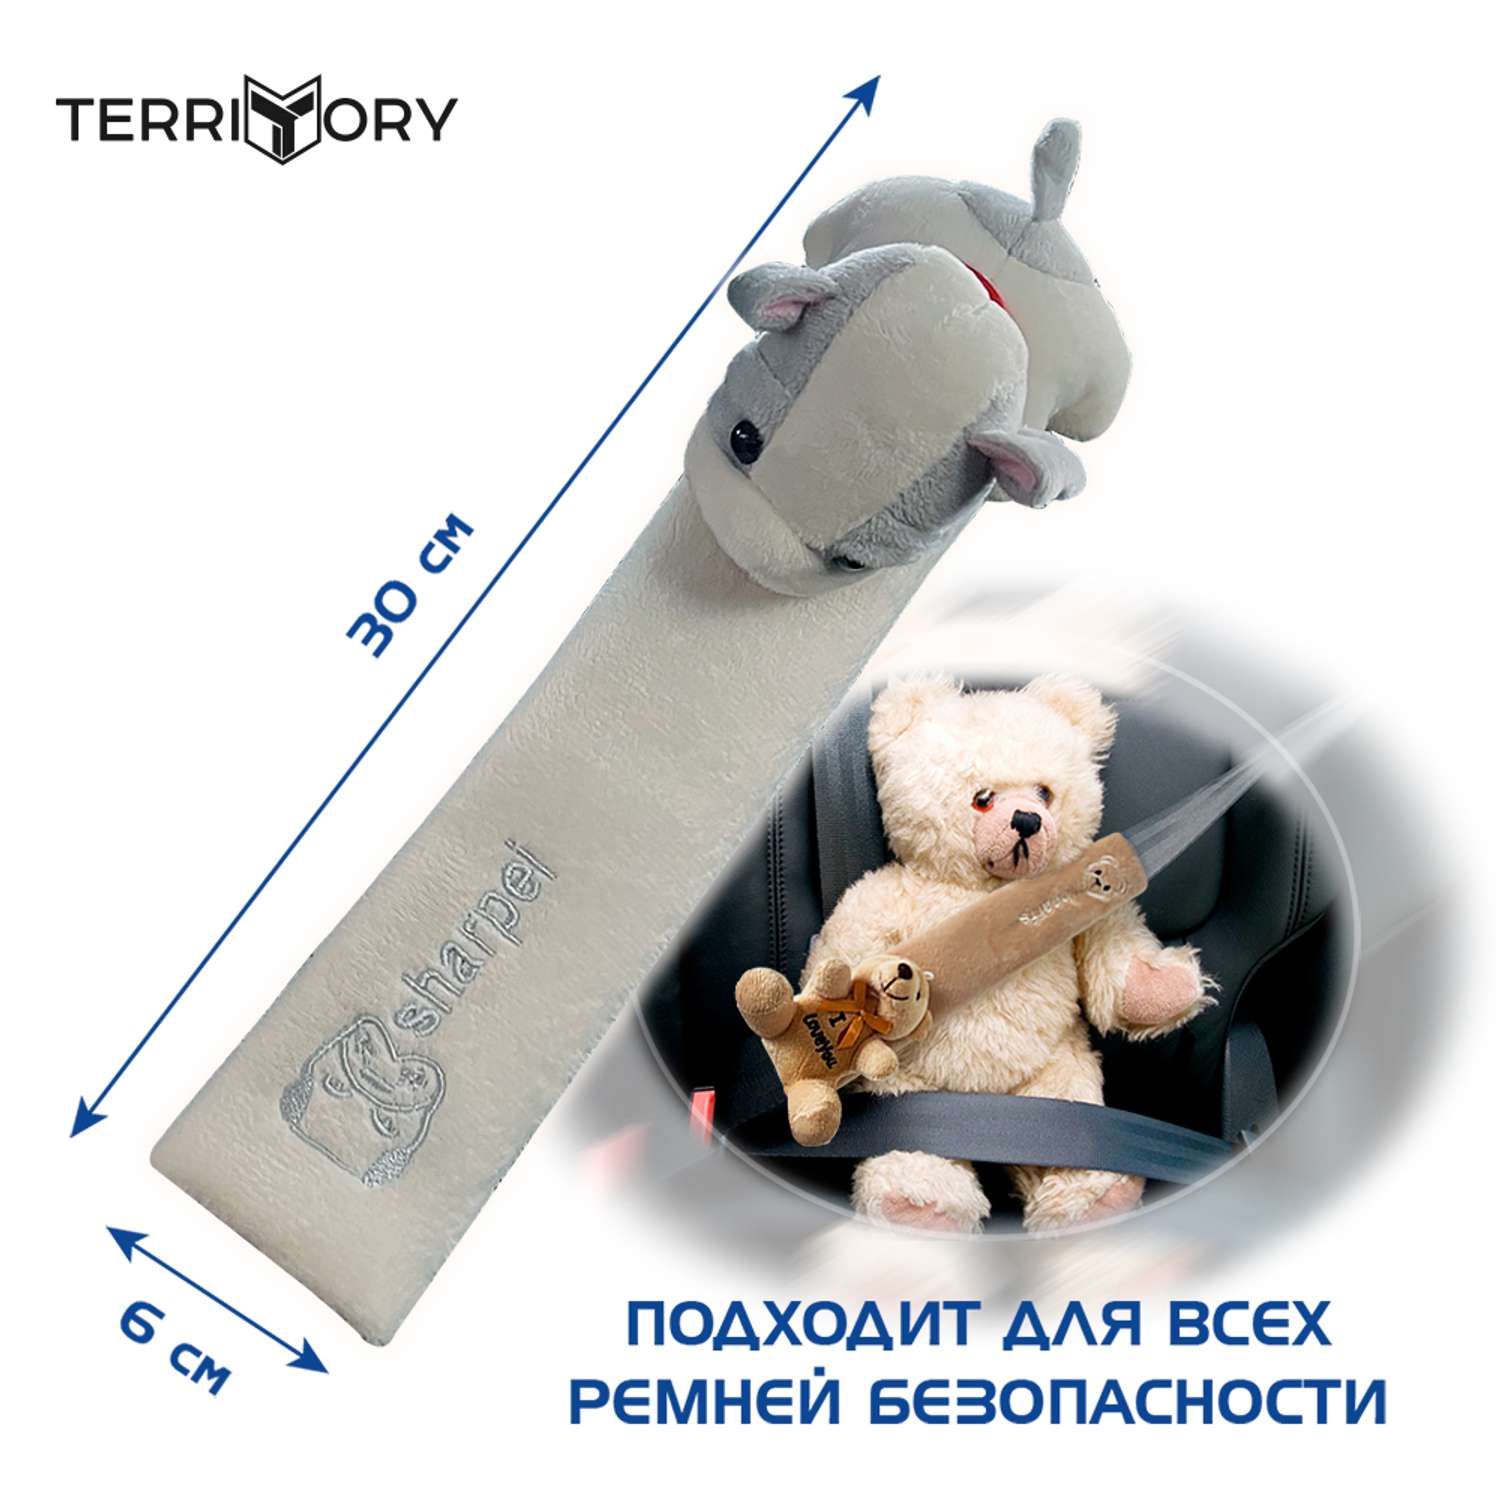 Накладка на ремень Territory безопасности детская с мягкой игрушкой белая собачка - фото 4